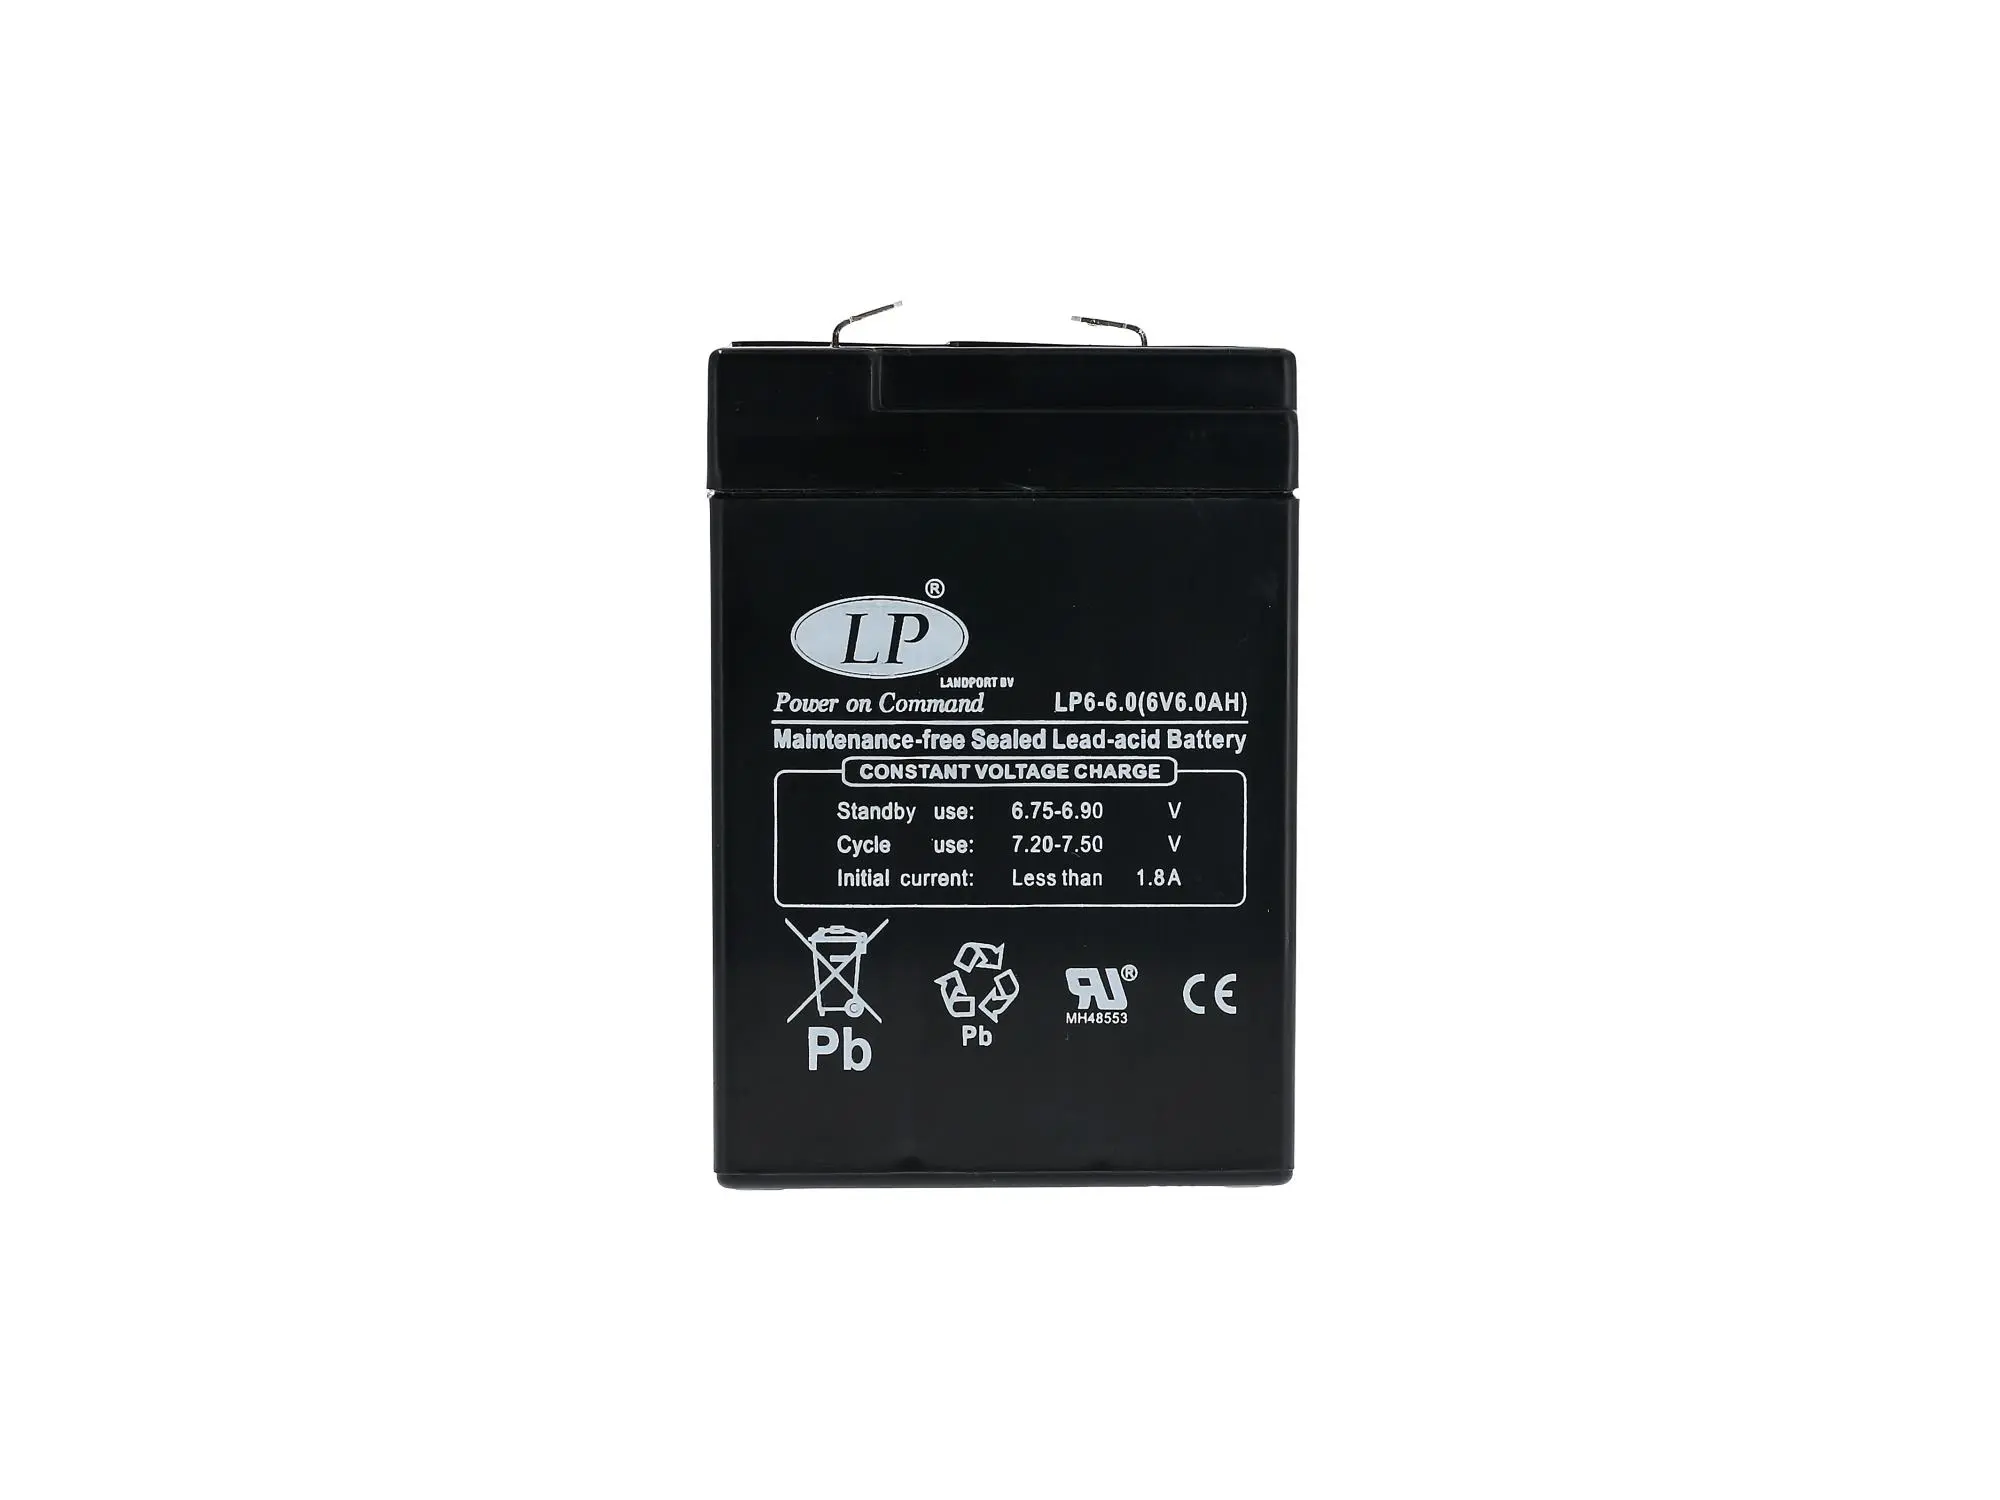 Batterie - 6V 6,0Ah LANDPORT (Vlies - wartungsfrei), Art.-Nr.: GP10068592 - Bild 1